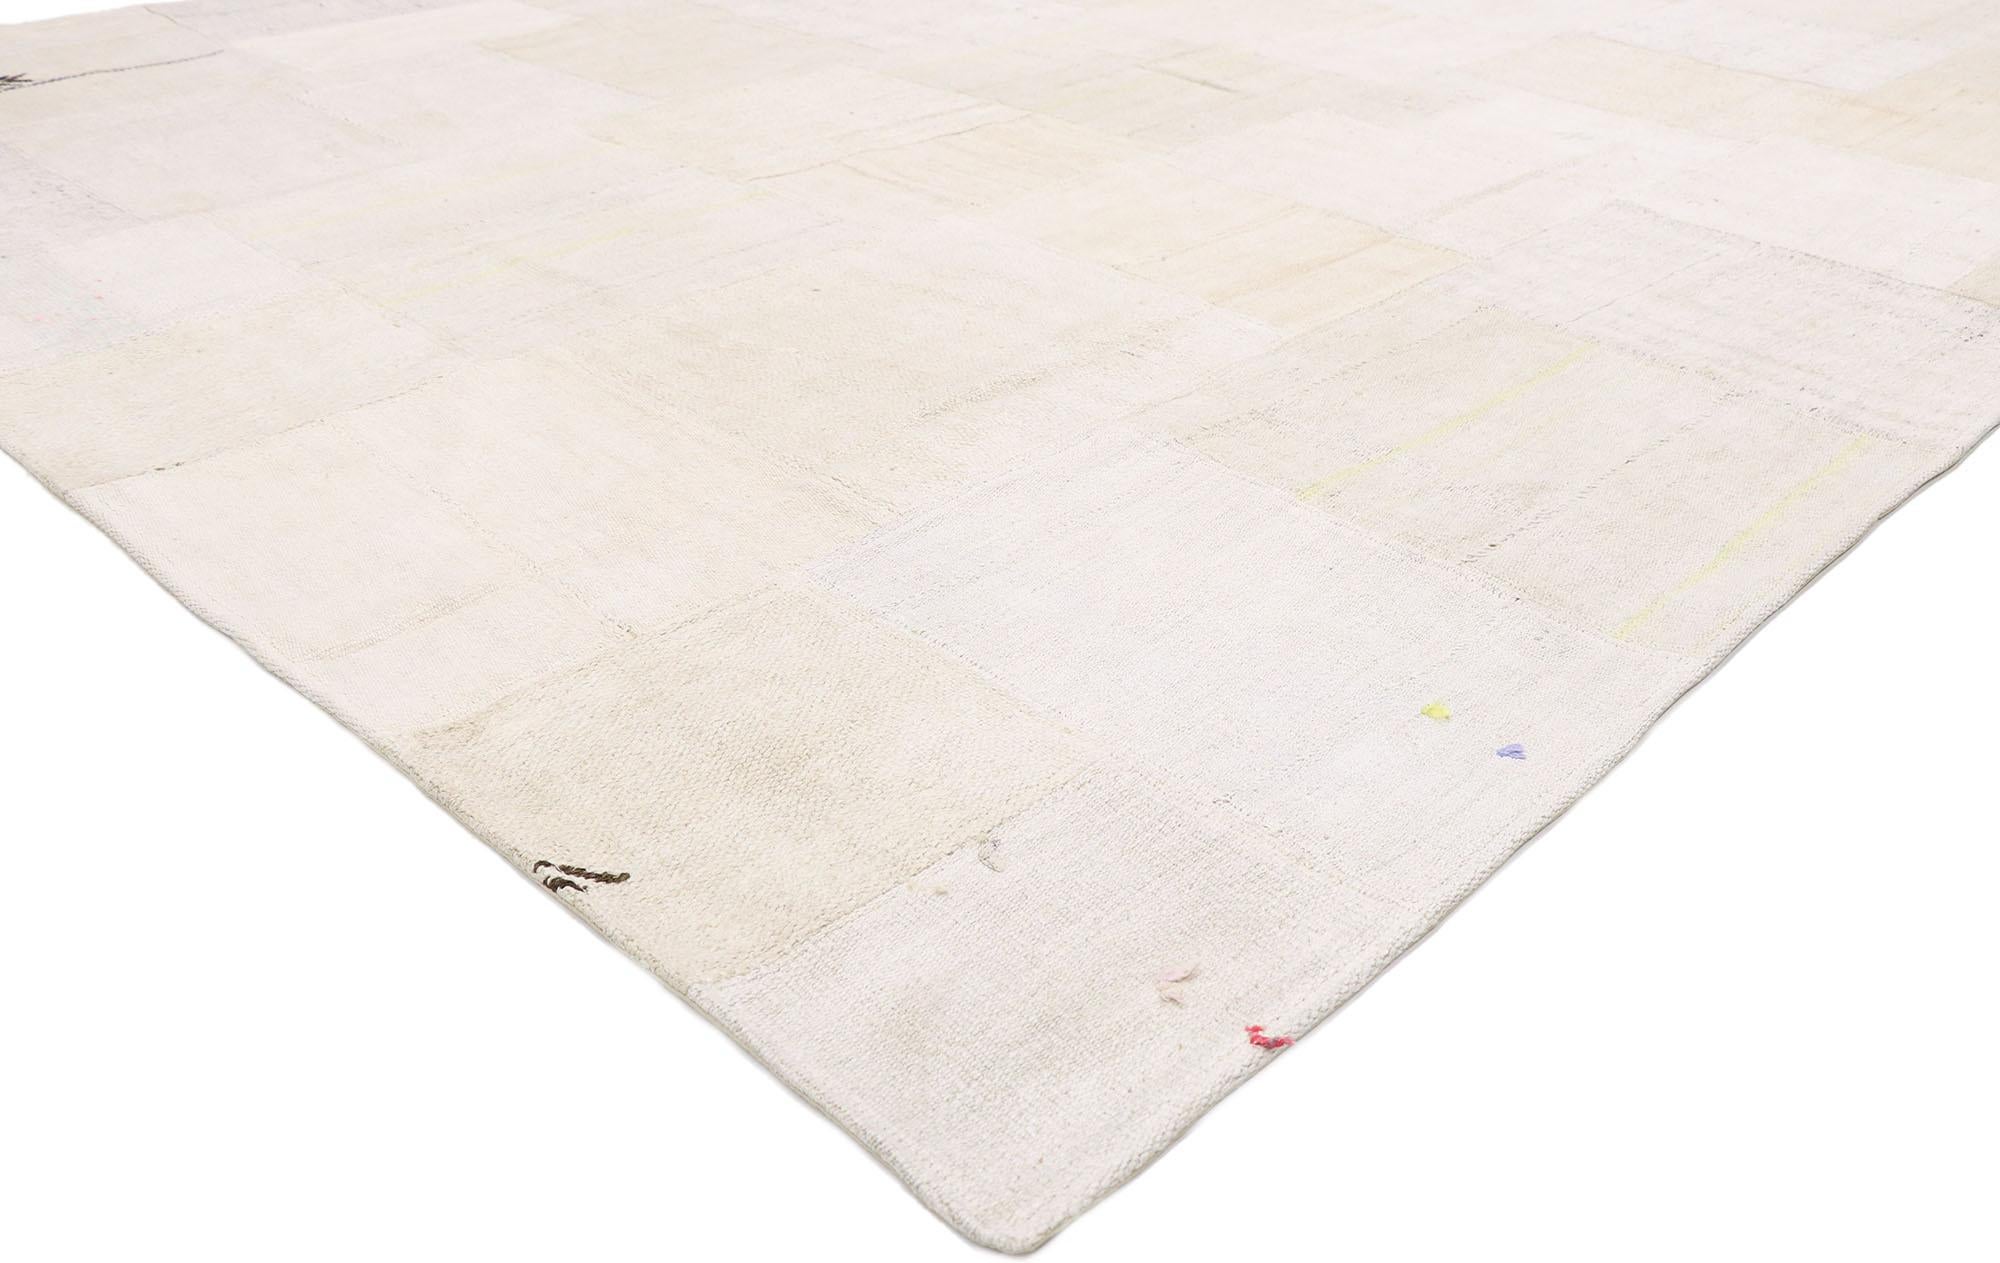 53528, türkischer Patchwork-Kilim-Teppich im skandinavisch-modernen Stil 09'02 x 12'00. Dieser handgewebte türkische Patchwork-Kilim mit ausgewogener Asymmetrie und schlichter Designästhetik verleiht einem warmen, entspannten Raum Textur und einen